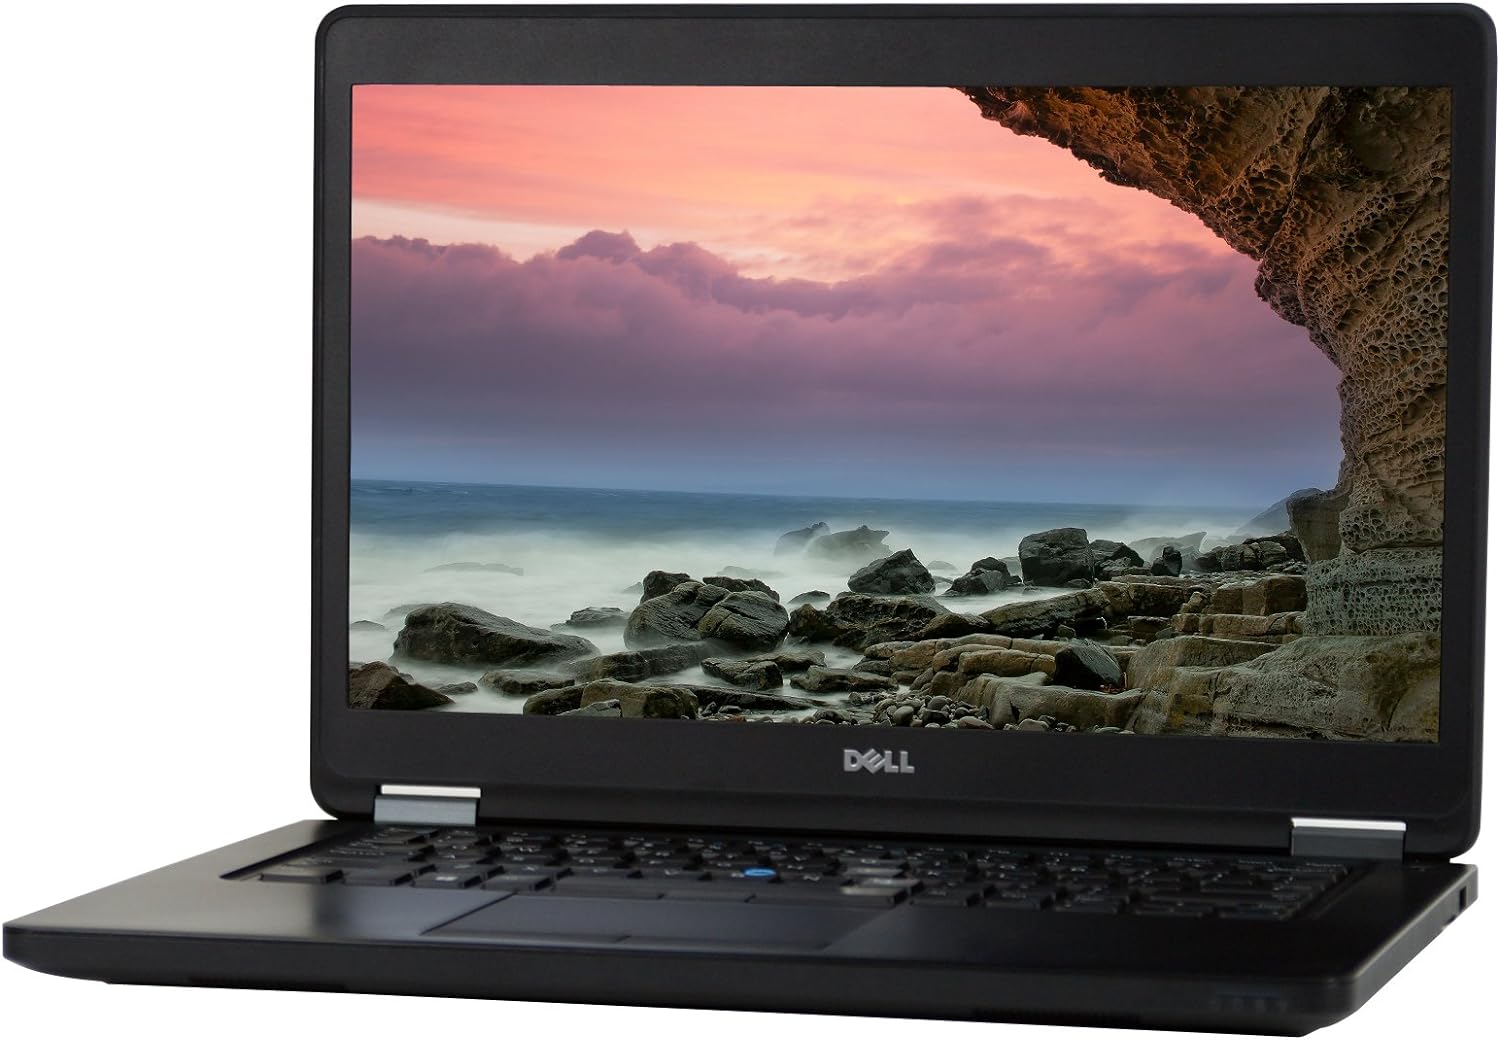 Refurbished Dell Latitude E5450 Laptop Computer Intel Core i5, 16GB Ram, 128GB Solid State Drive, Windows 10